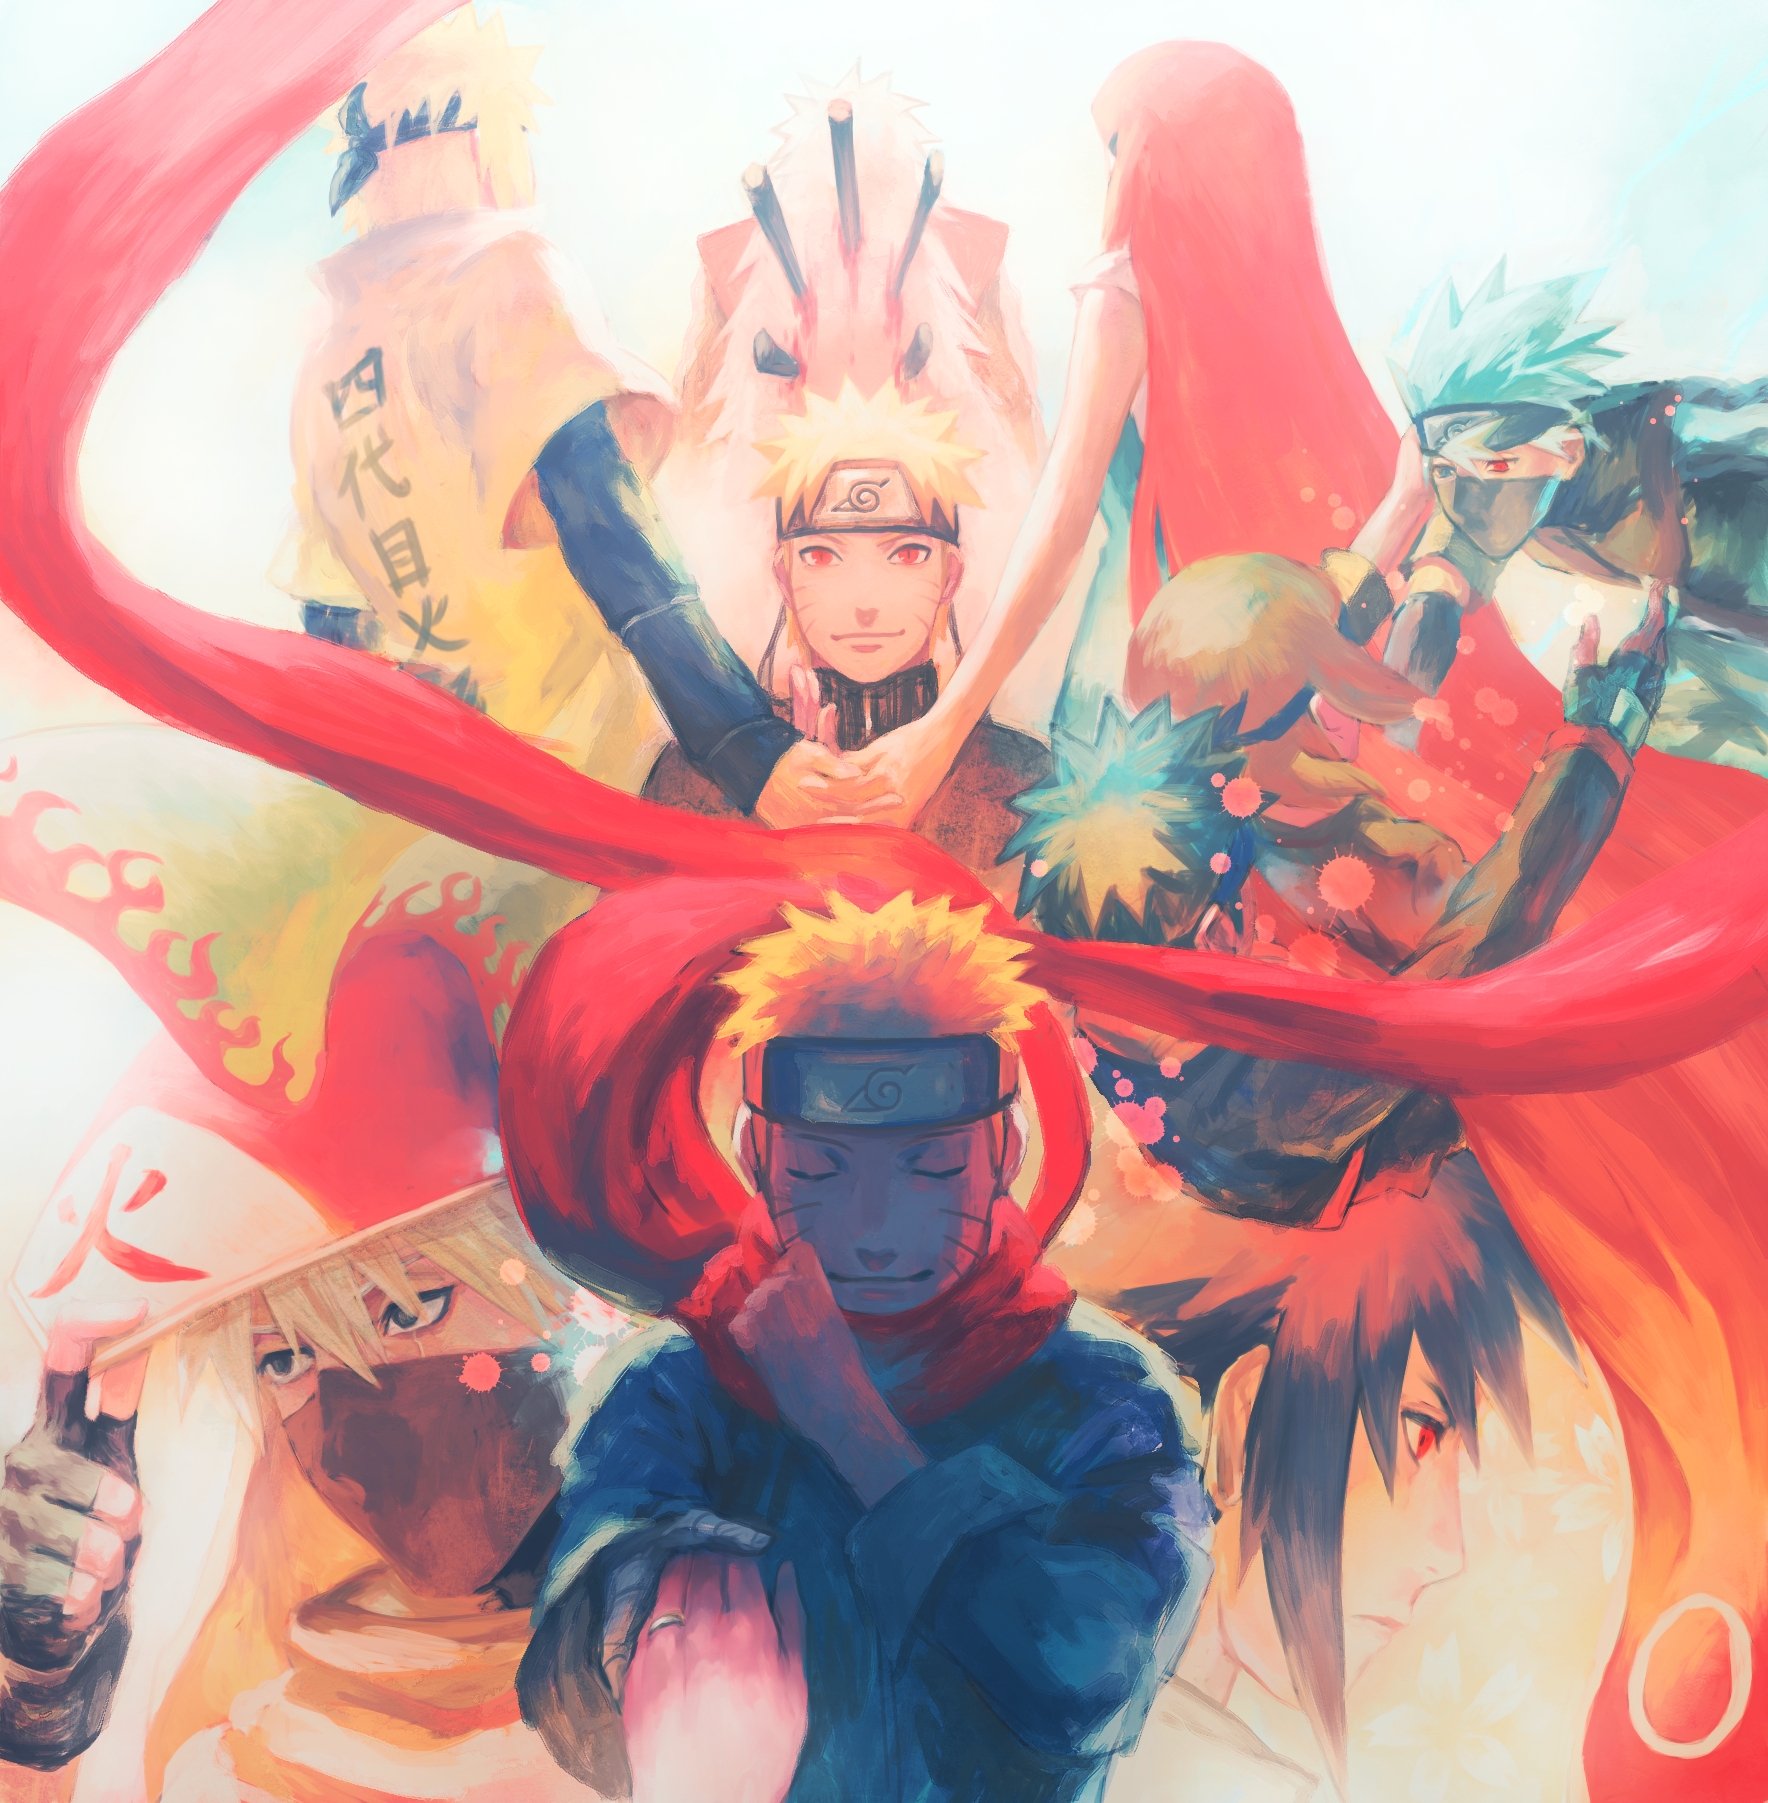 Naruto's strory